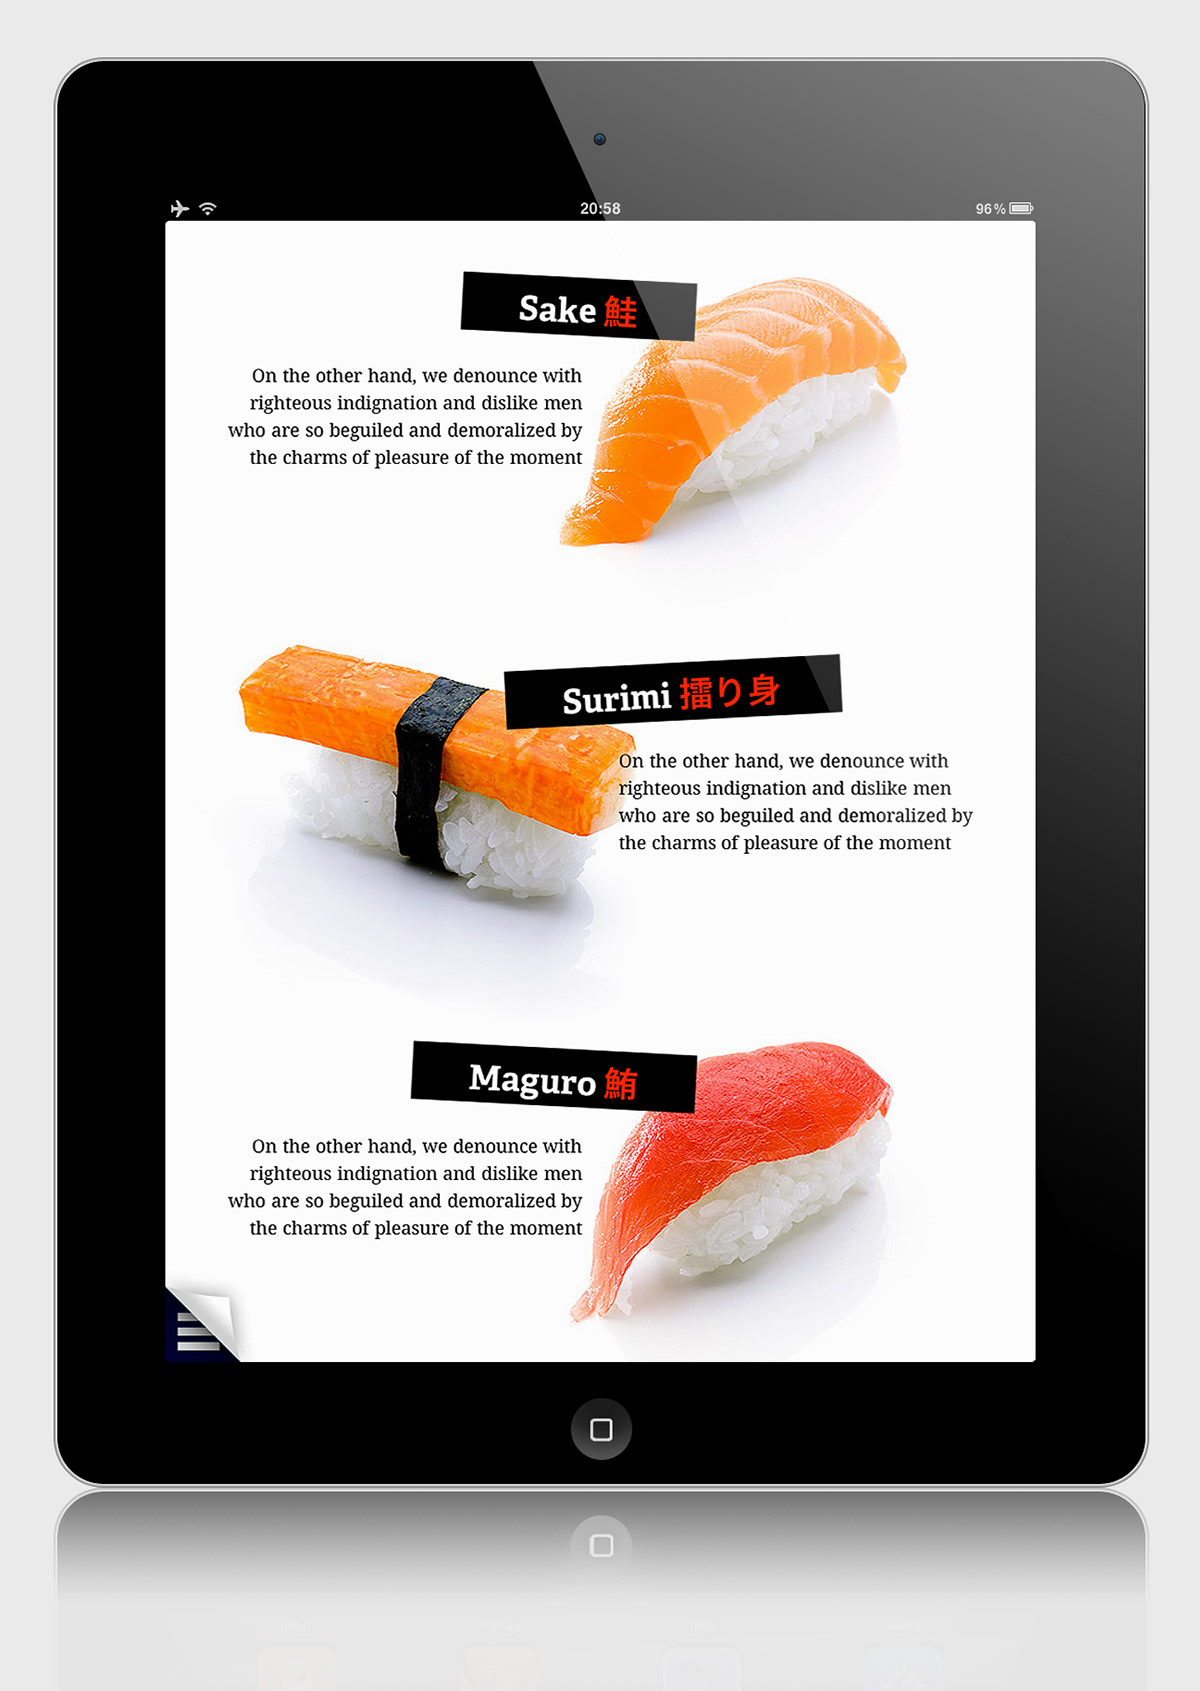 aside asidemag aside magazine magazine iPad tablet Interface html5